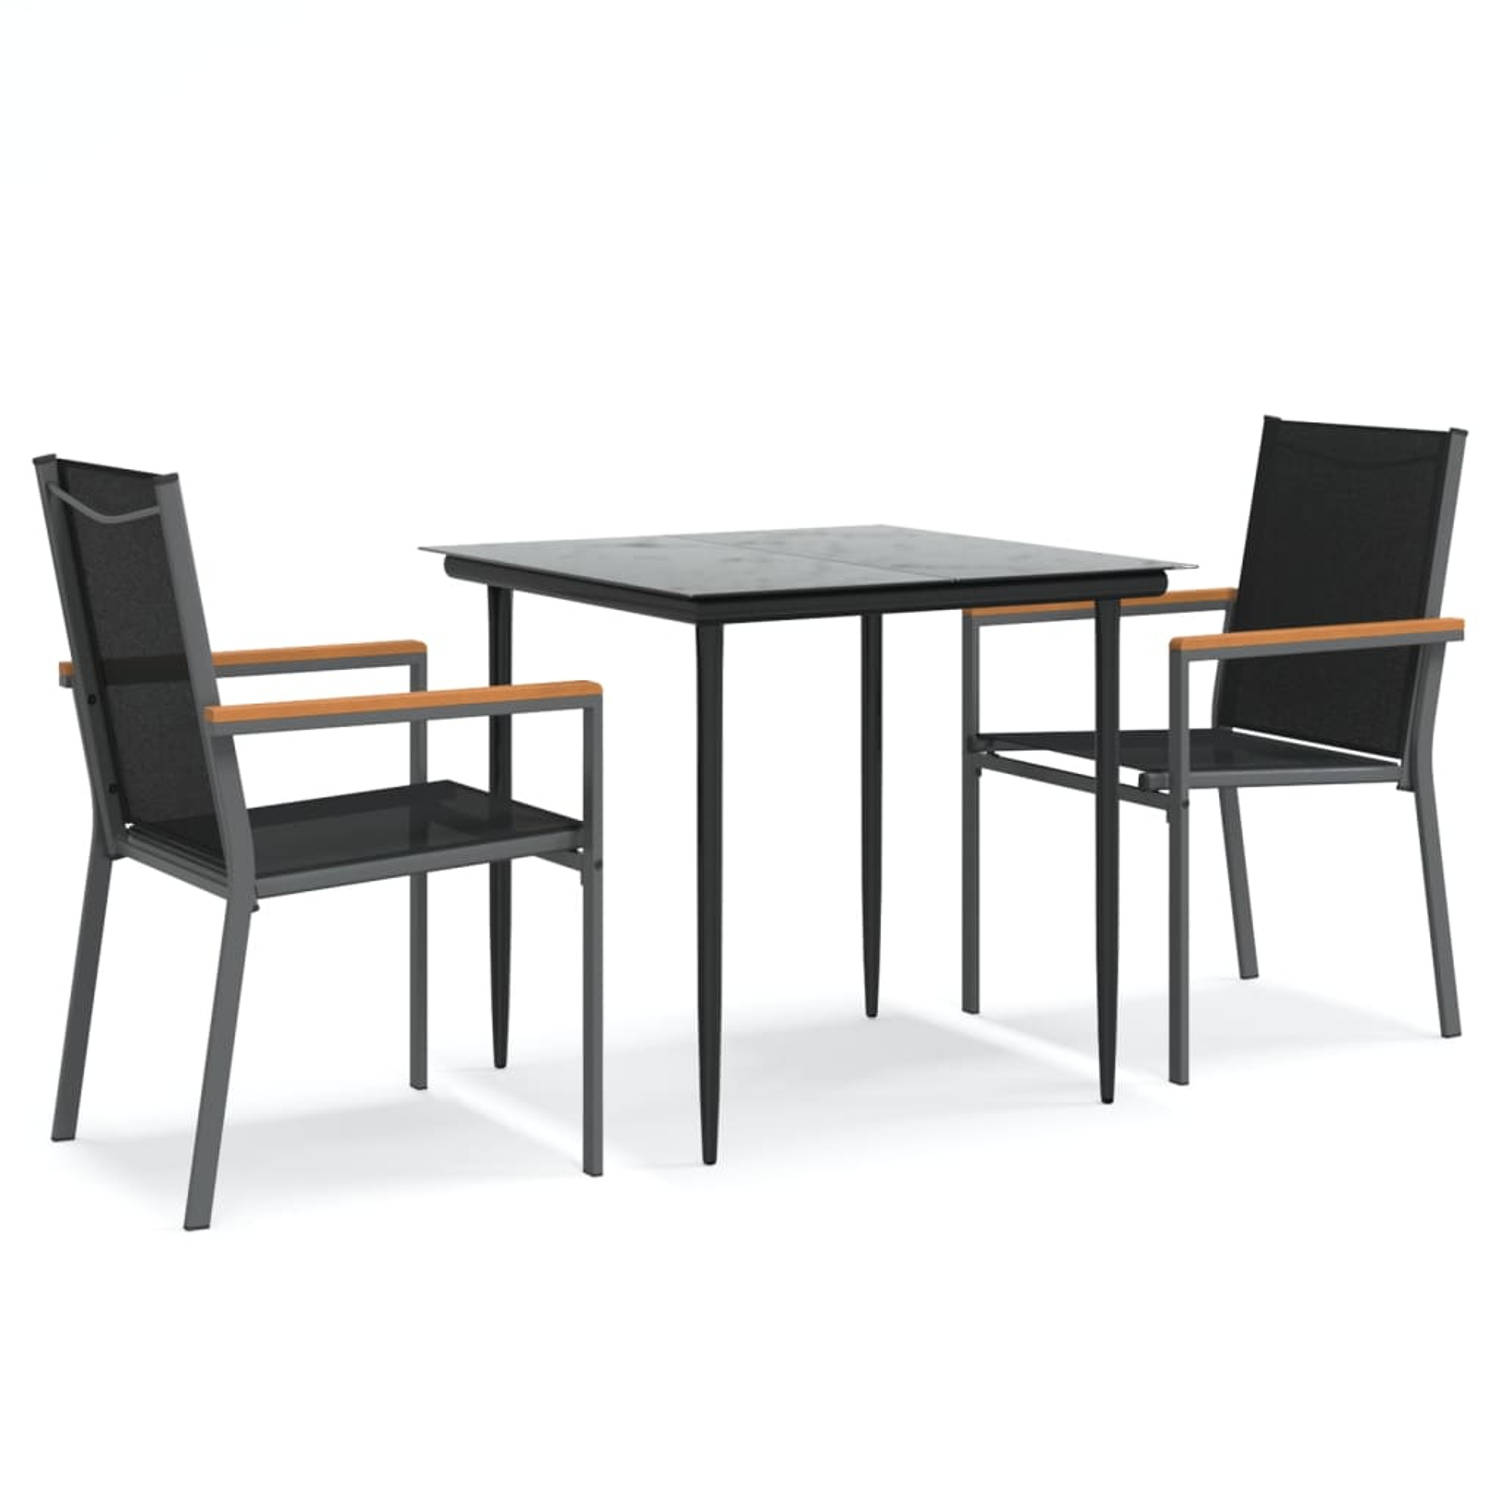 The Living Store Tuinset - Comfort - Eettafel met 2 stoelen - 80x80x74cm - Textileen/staal/glas